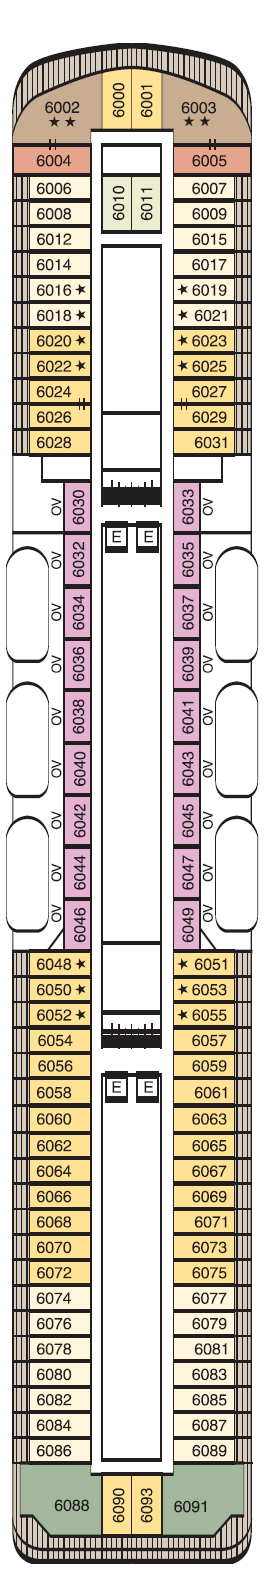 Deck 6 Deck Plan